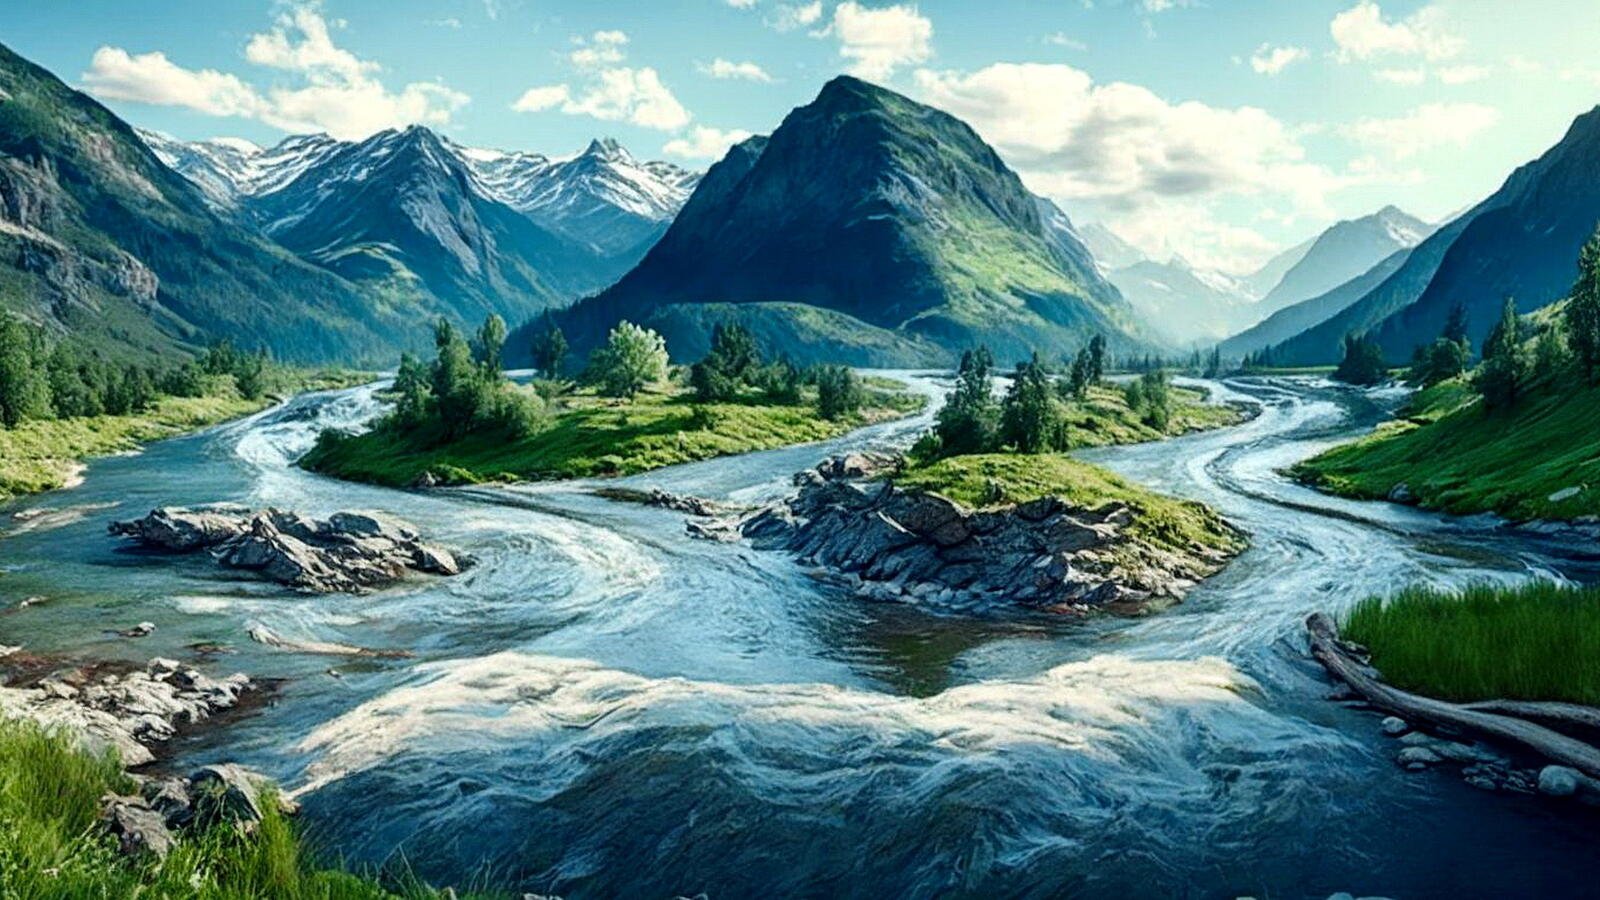 Free photo A river against a mountainous landscape